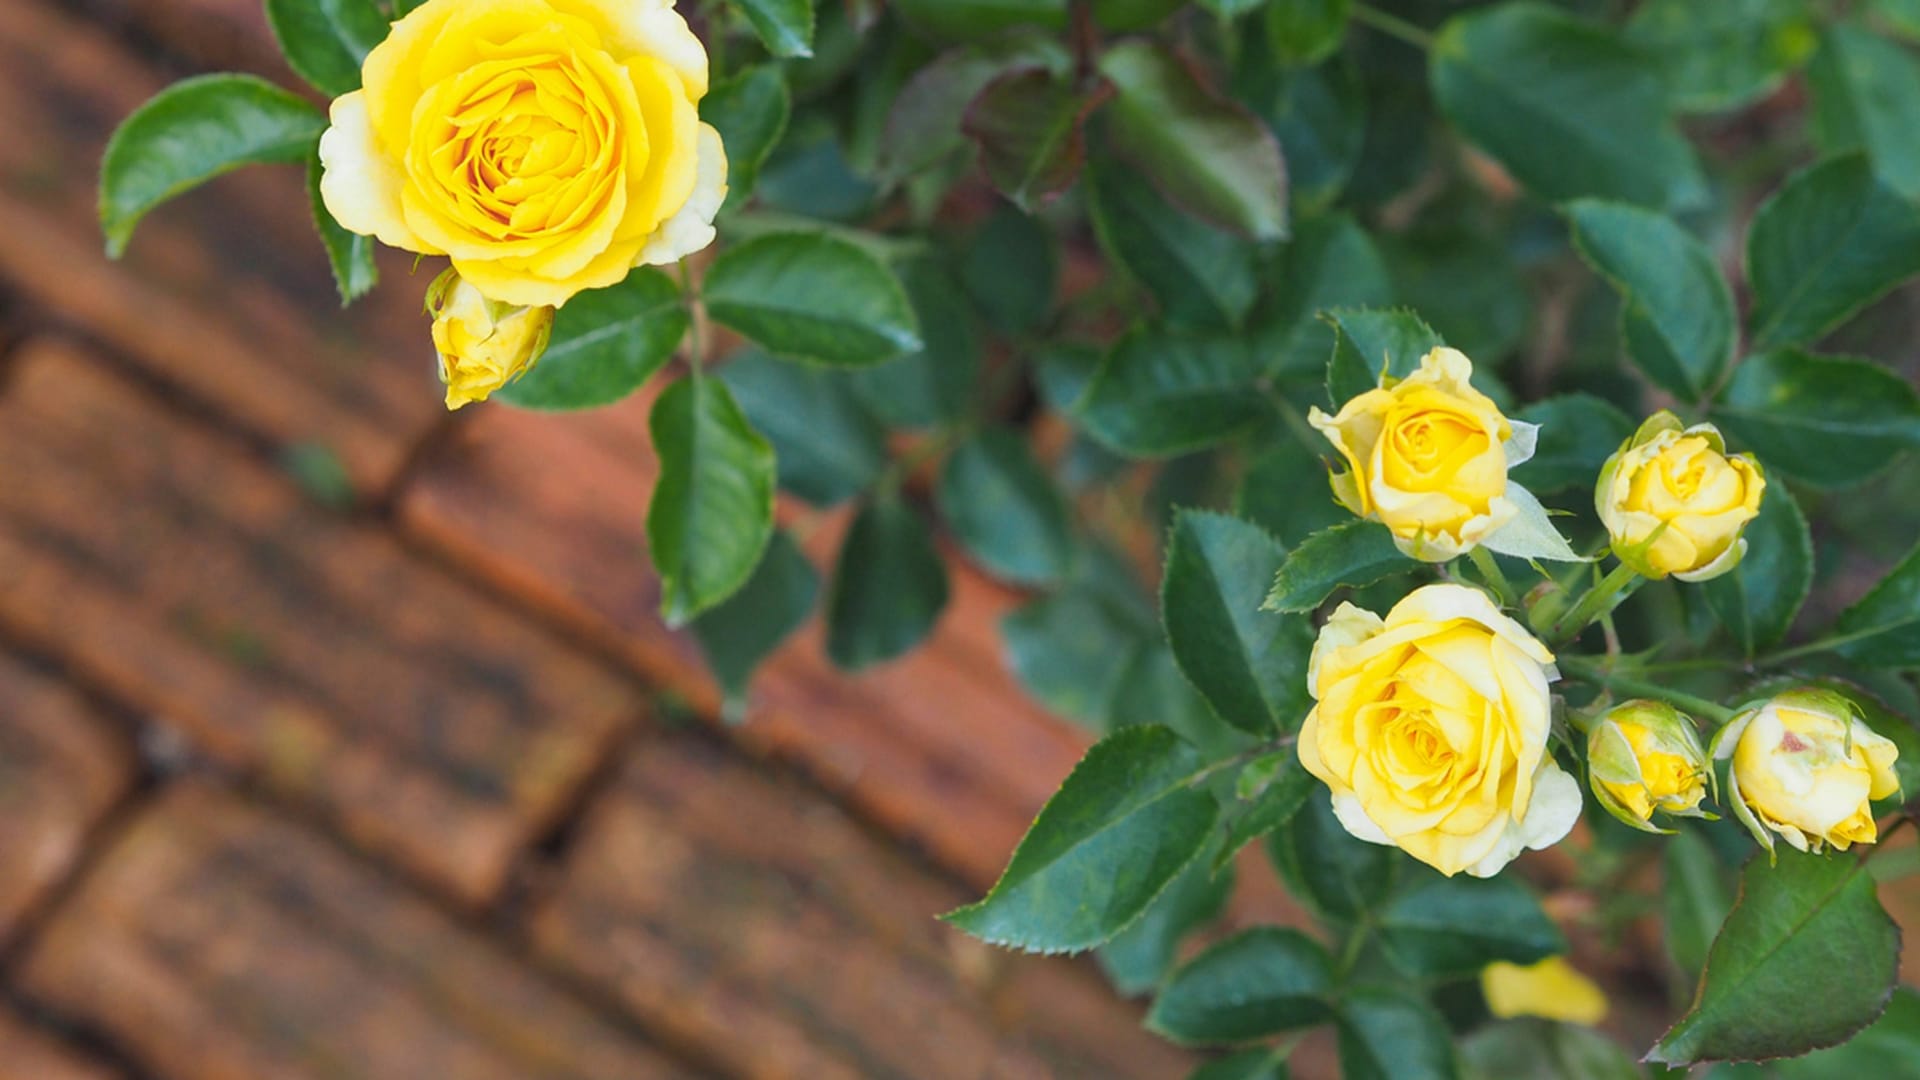 Balkonové růže mají drovné, ale krásně plné květy